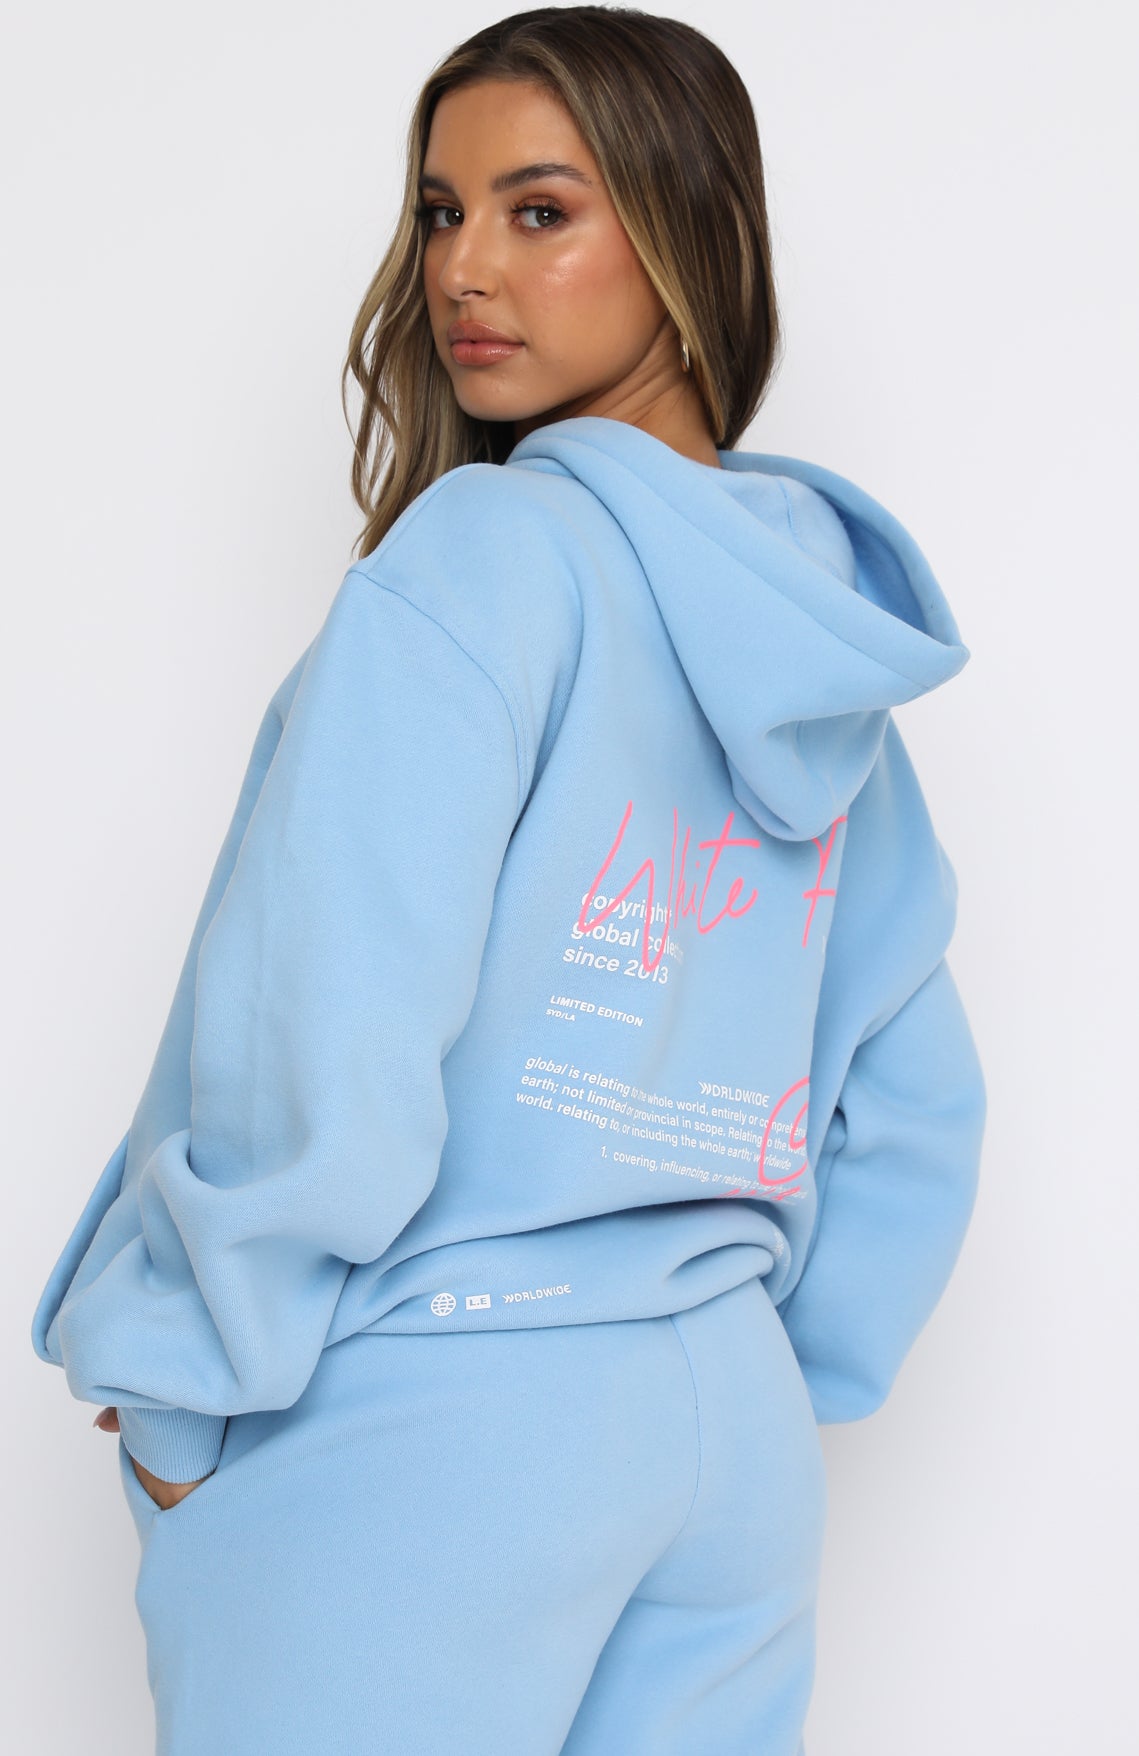 blue la hoodie